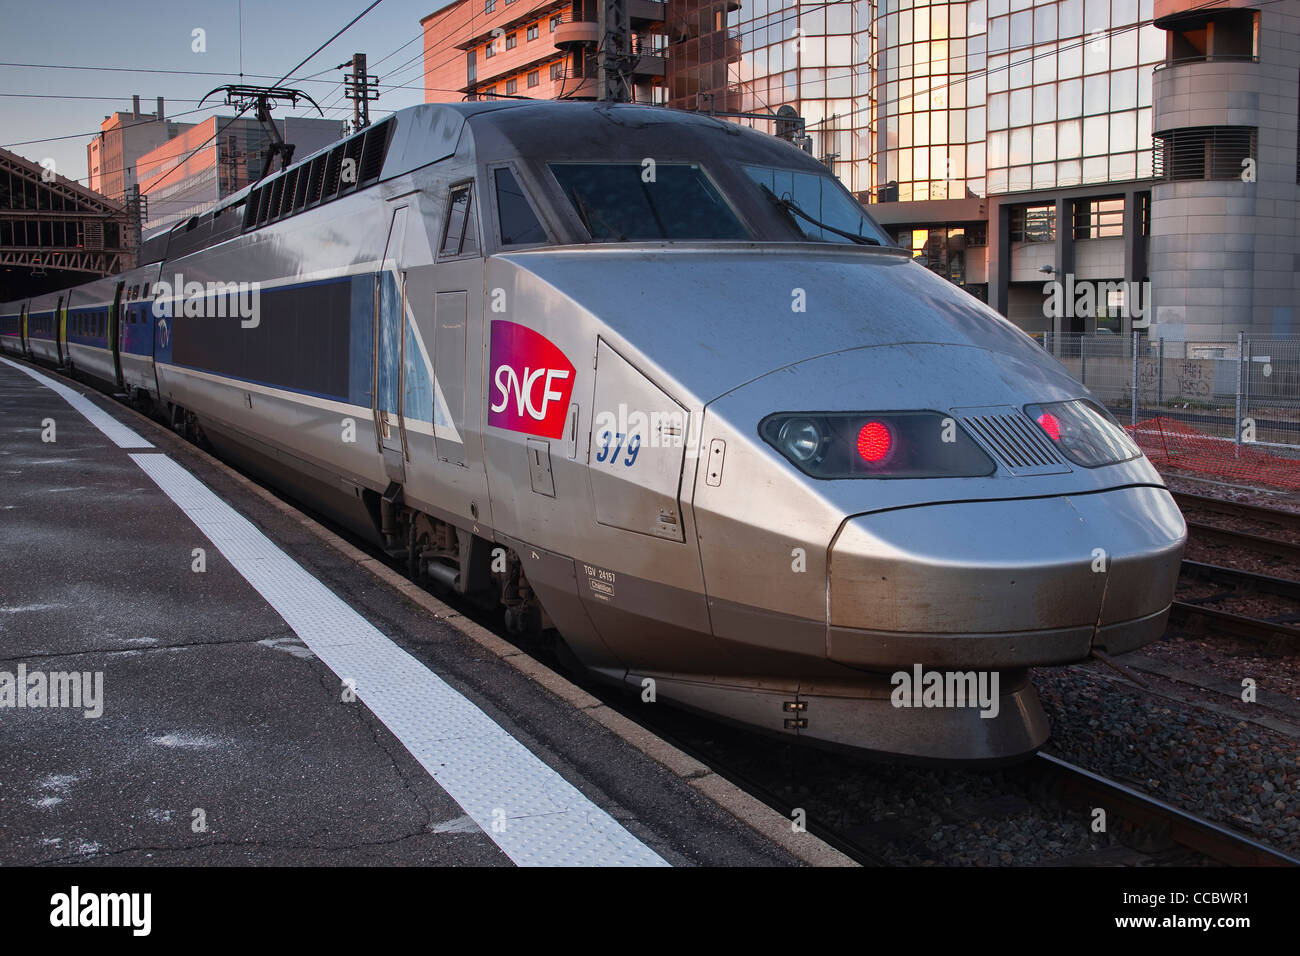 El orgullo de los franceses es el sistema de trenes TGV. Este uno que acaba de llegar a la estación de tren de Tours en Francia. Foto de stock